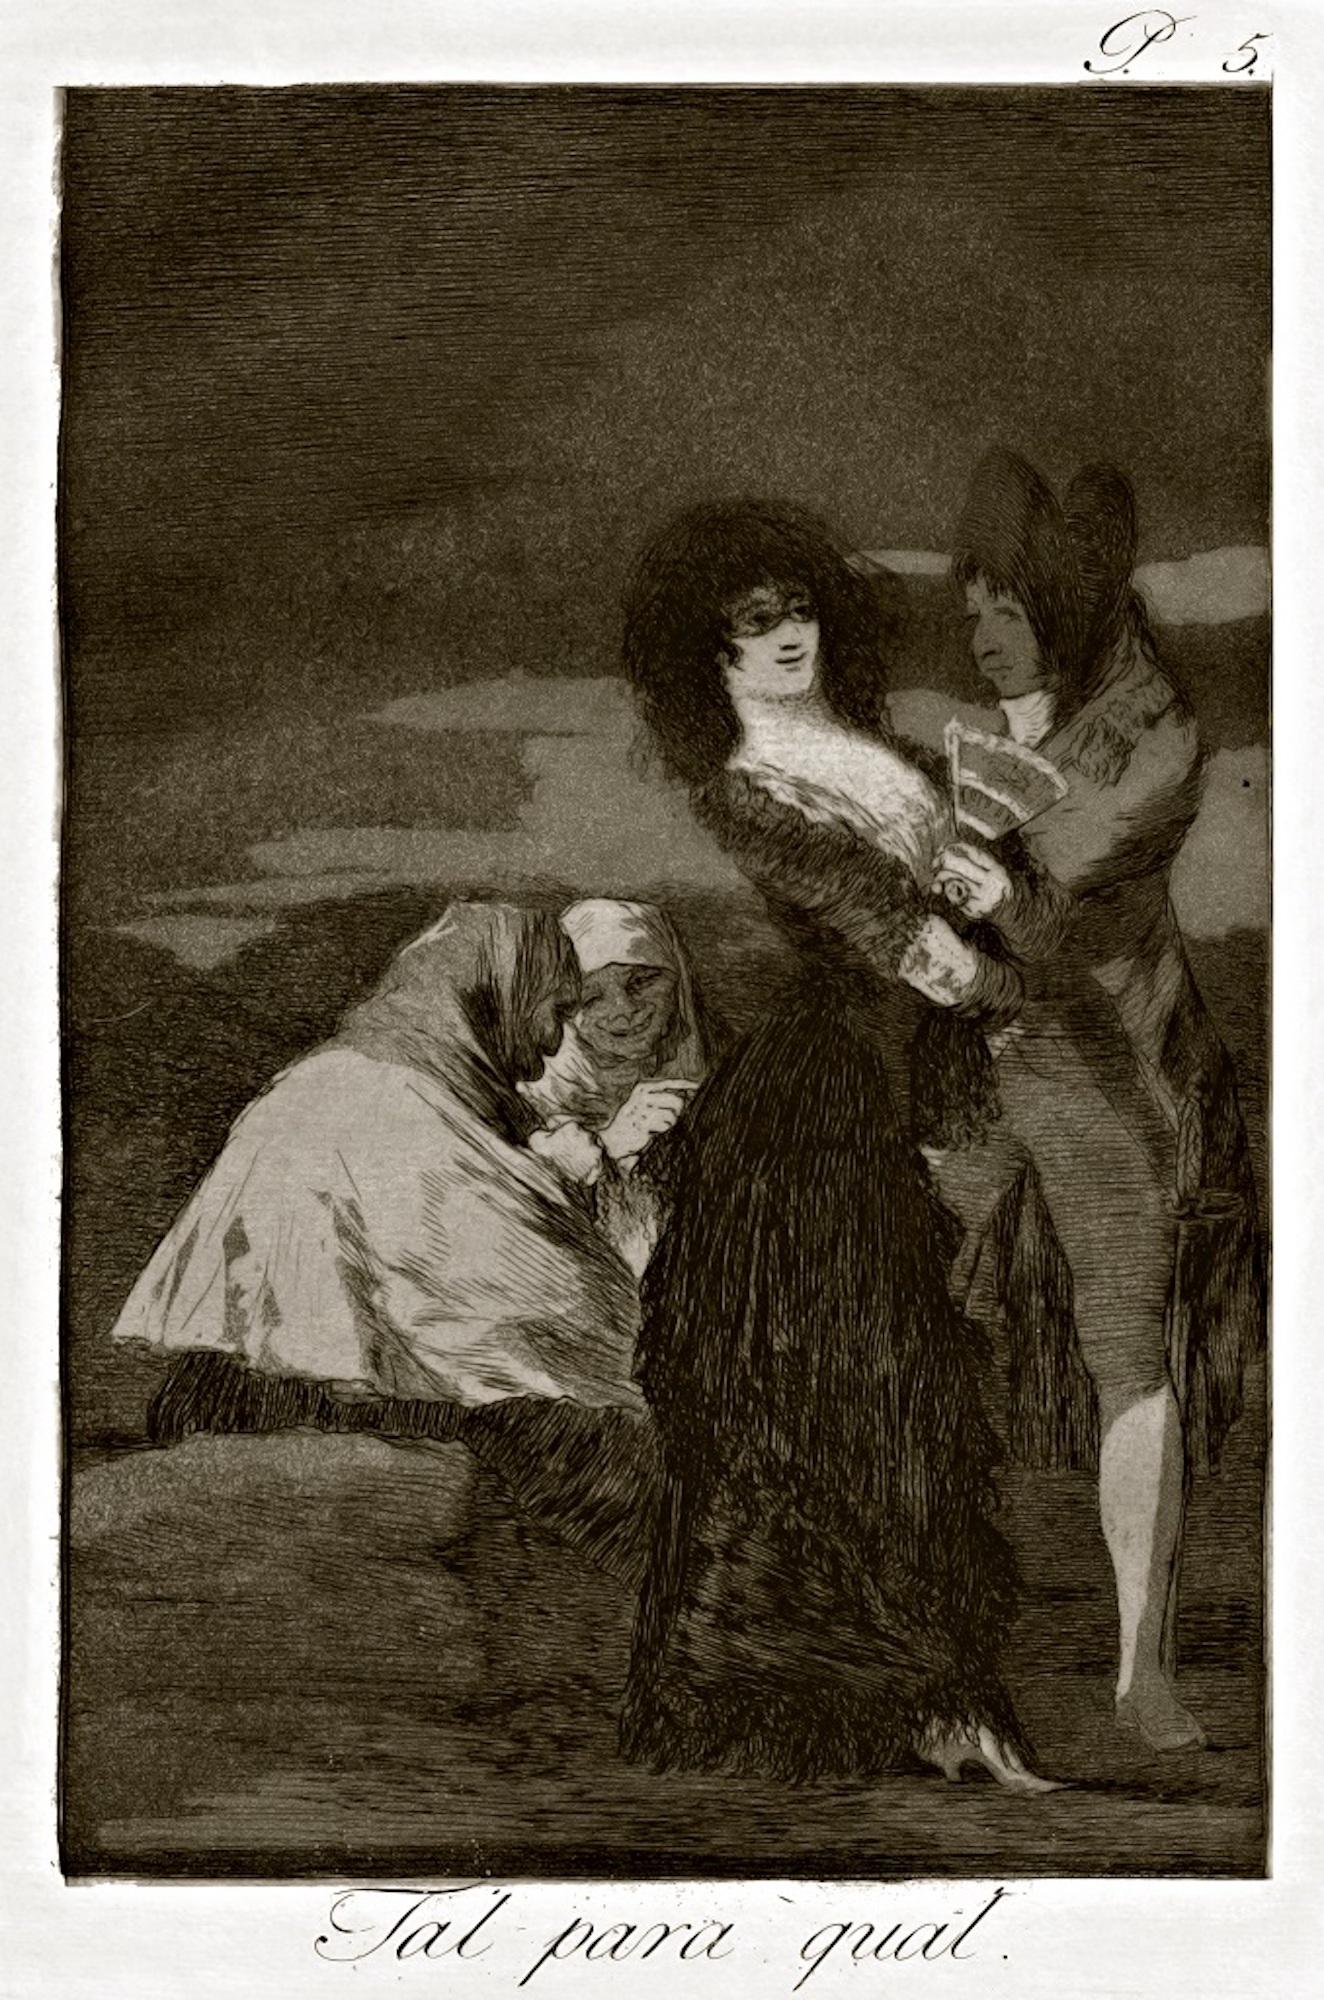 Tal para Qual est une œuvre originale réalisée par l'artiste espagnol Francisco Goya et publiée pour la première fois en 1799.

Gravure originale sur papier.

La planche fait partie de la troisième édition de "Los Caprichos", publiée en 1868 par la